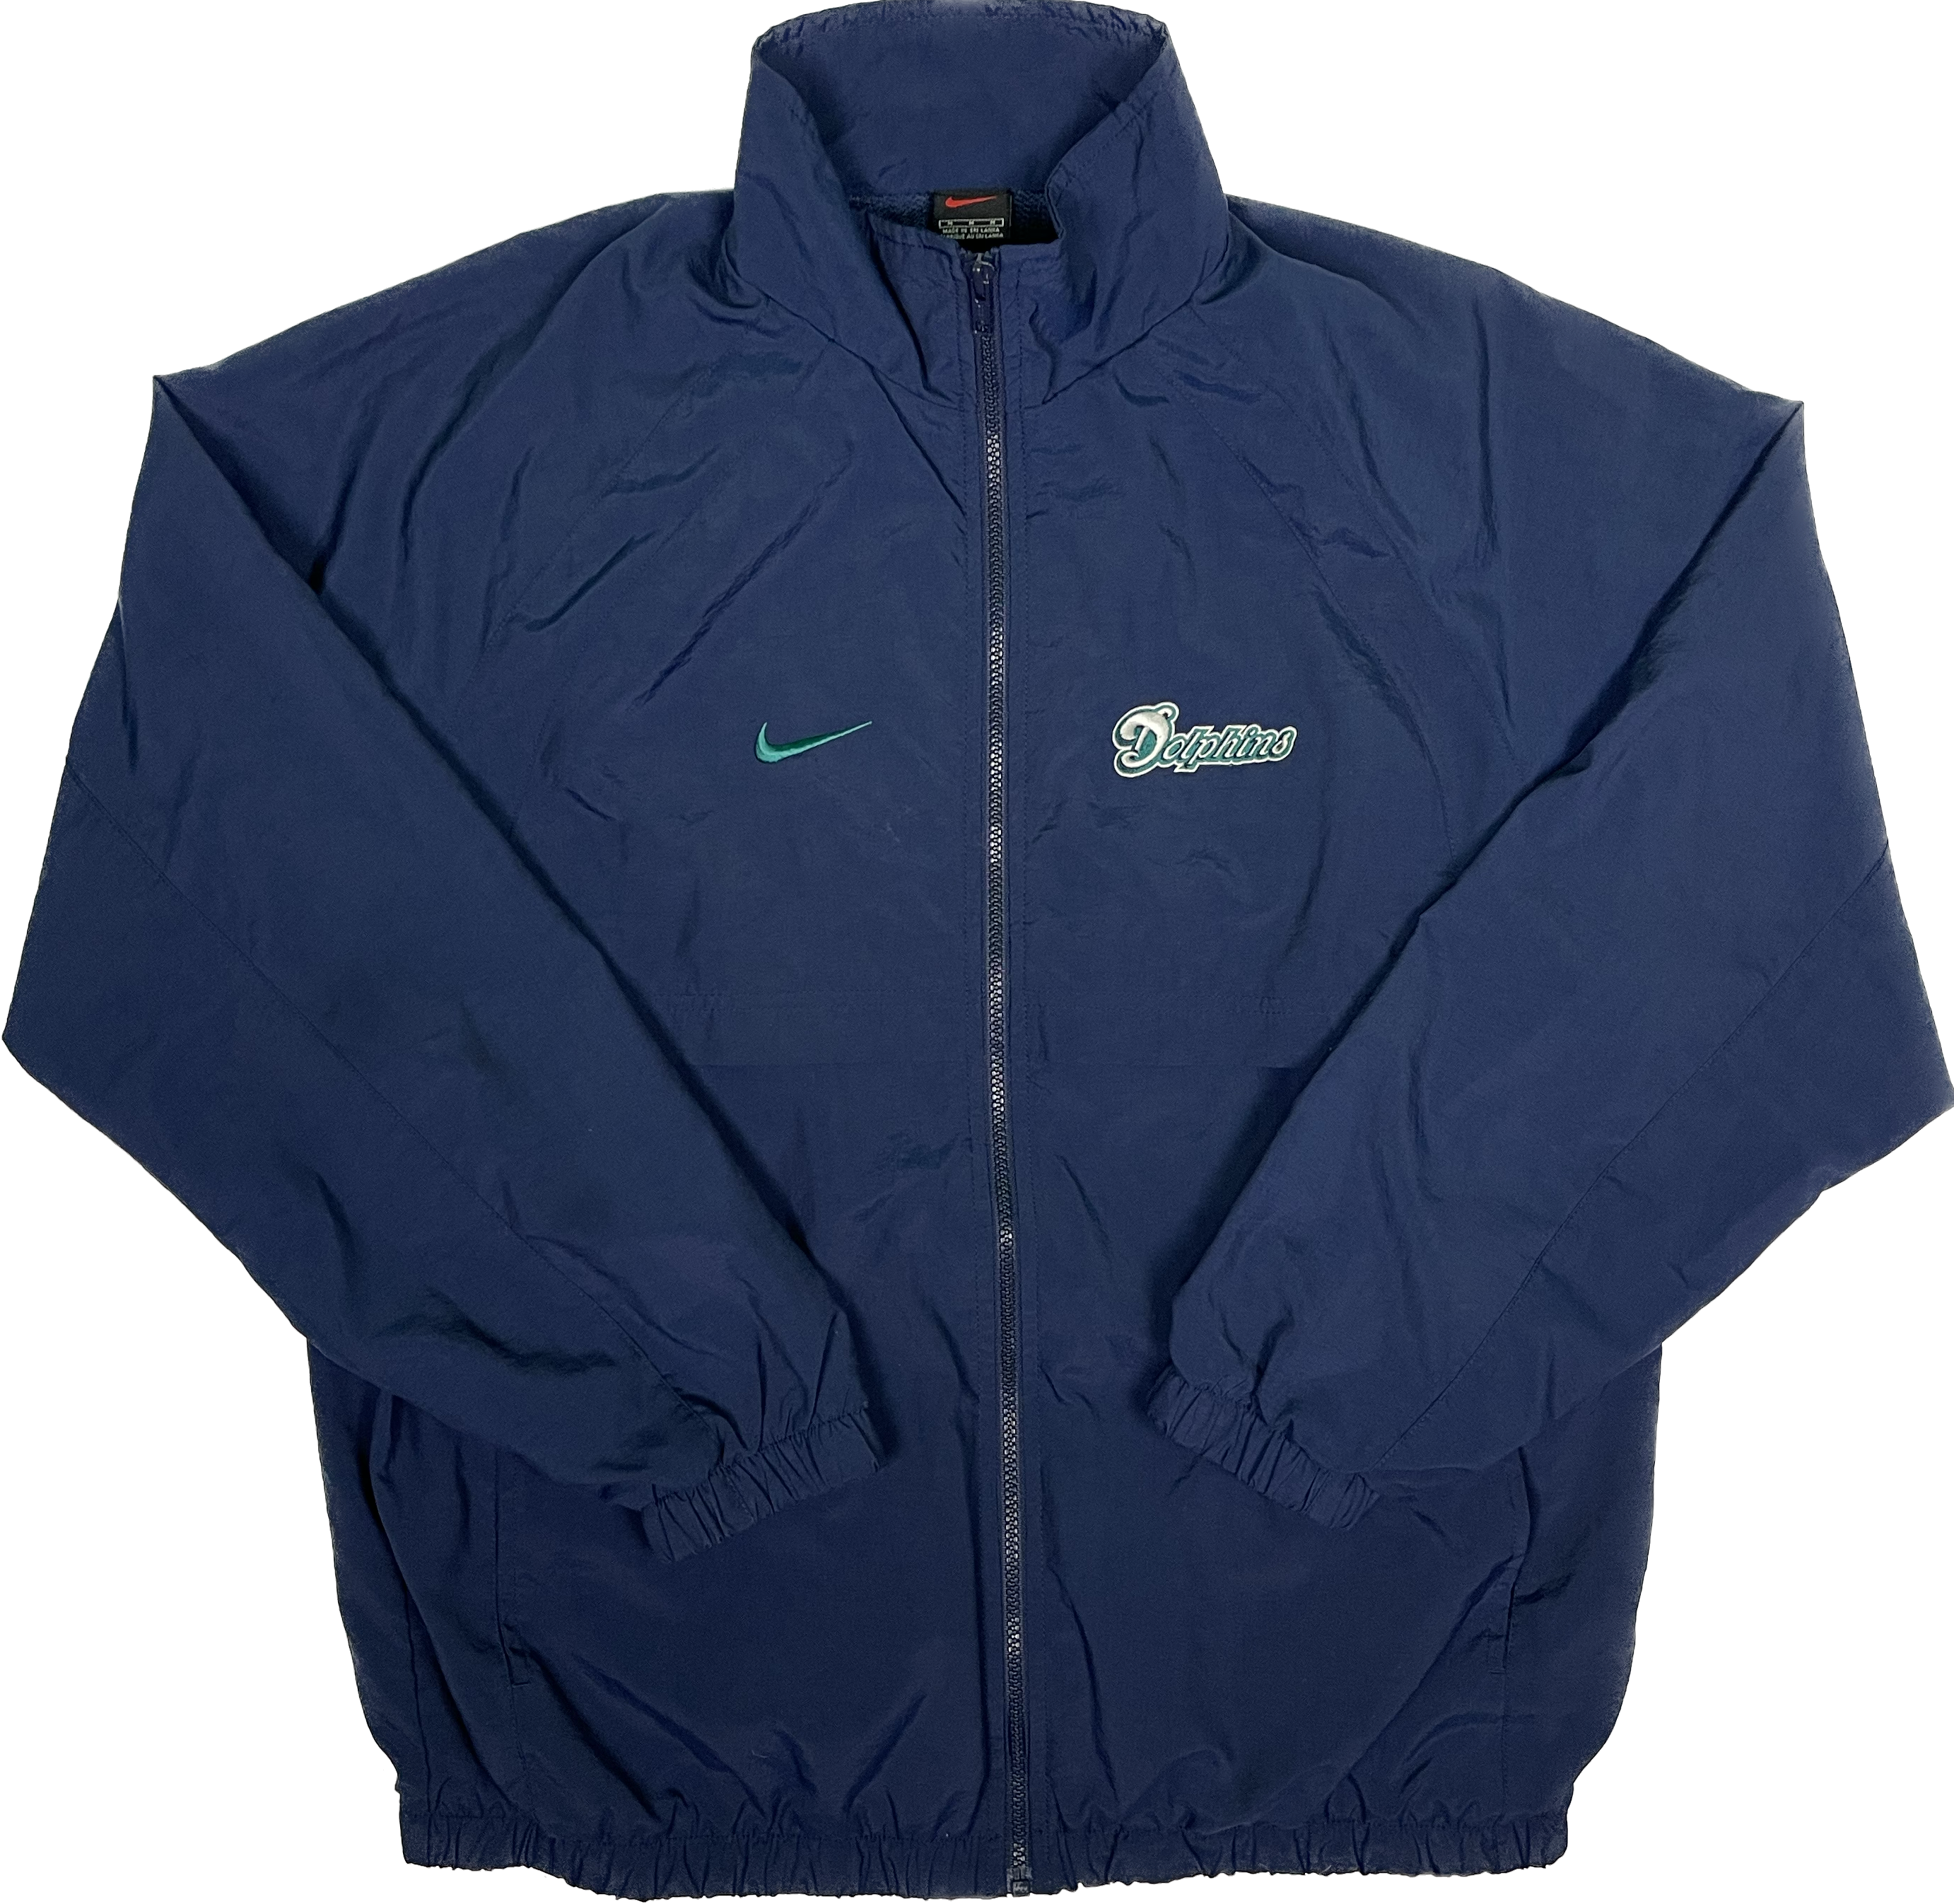 Nike Miami Dolphins Vintage Jacket